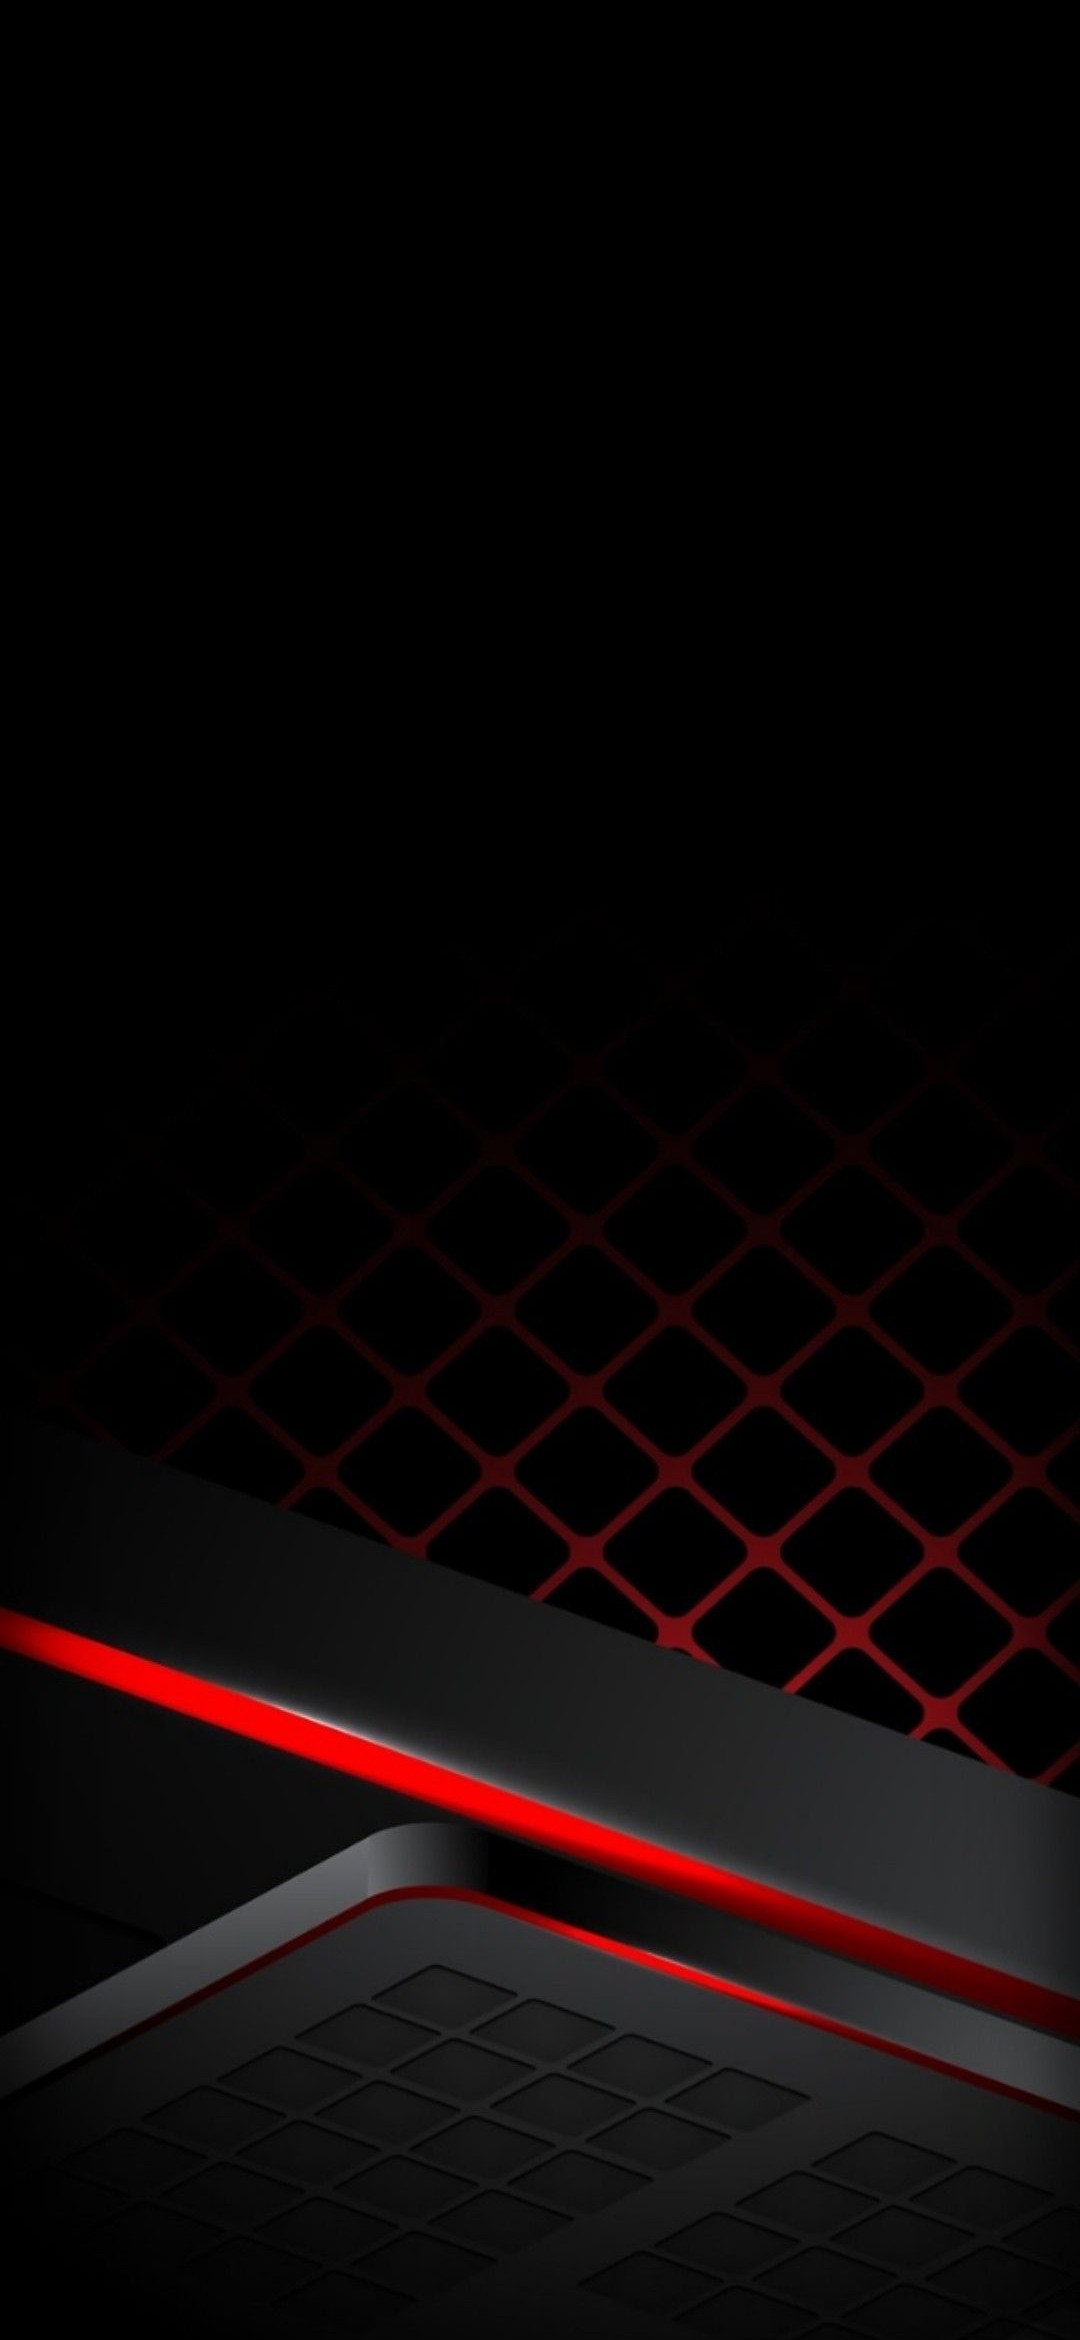 かっこいい黒と赤のテクスチャー Galaxy A30 Android 壁紙 待ち受け Sumaran